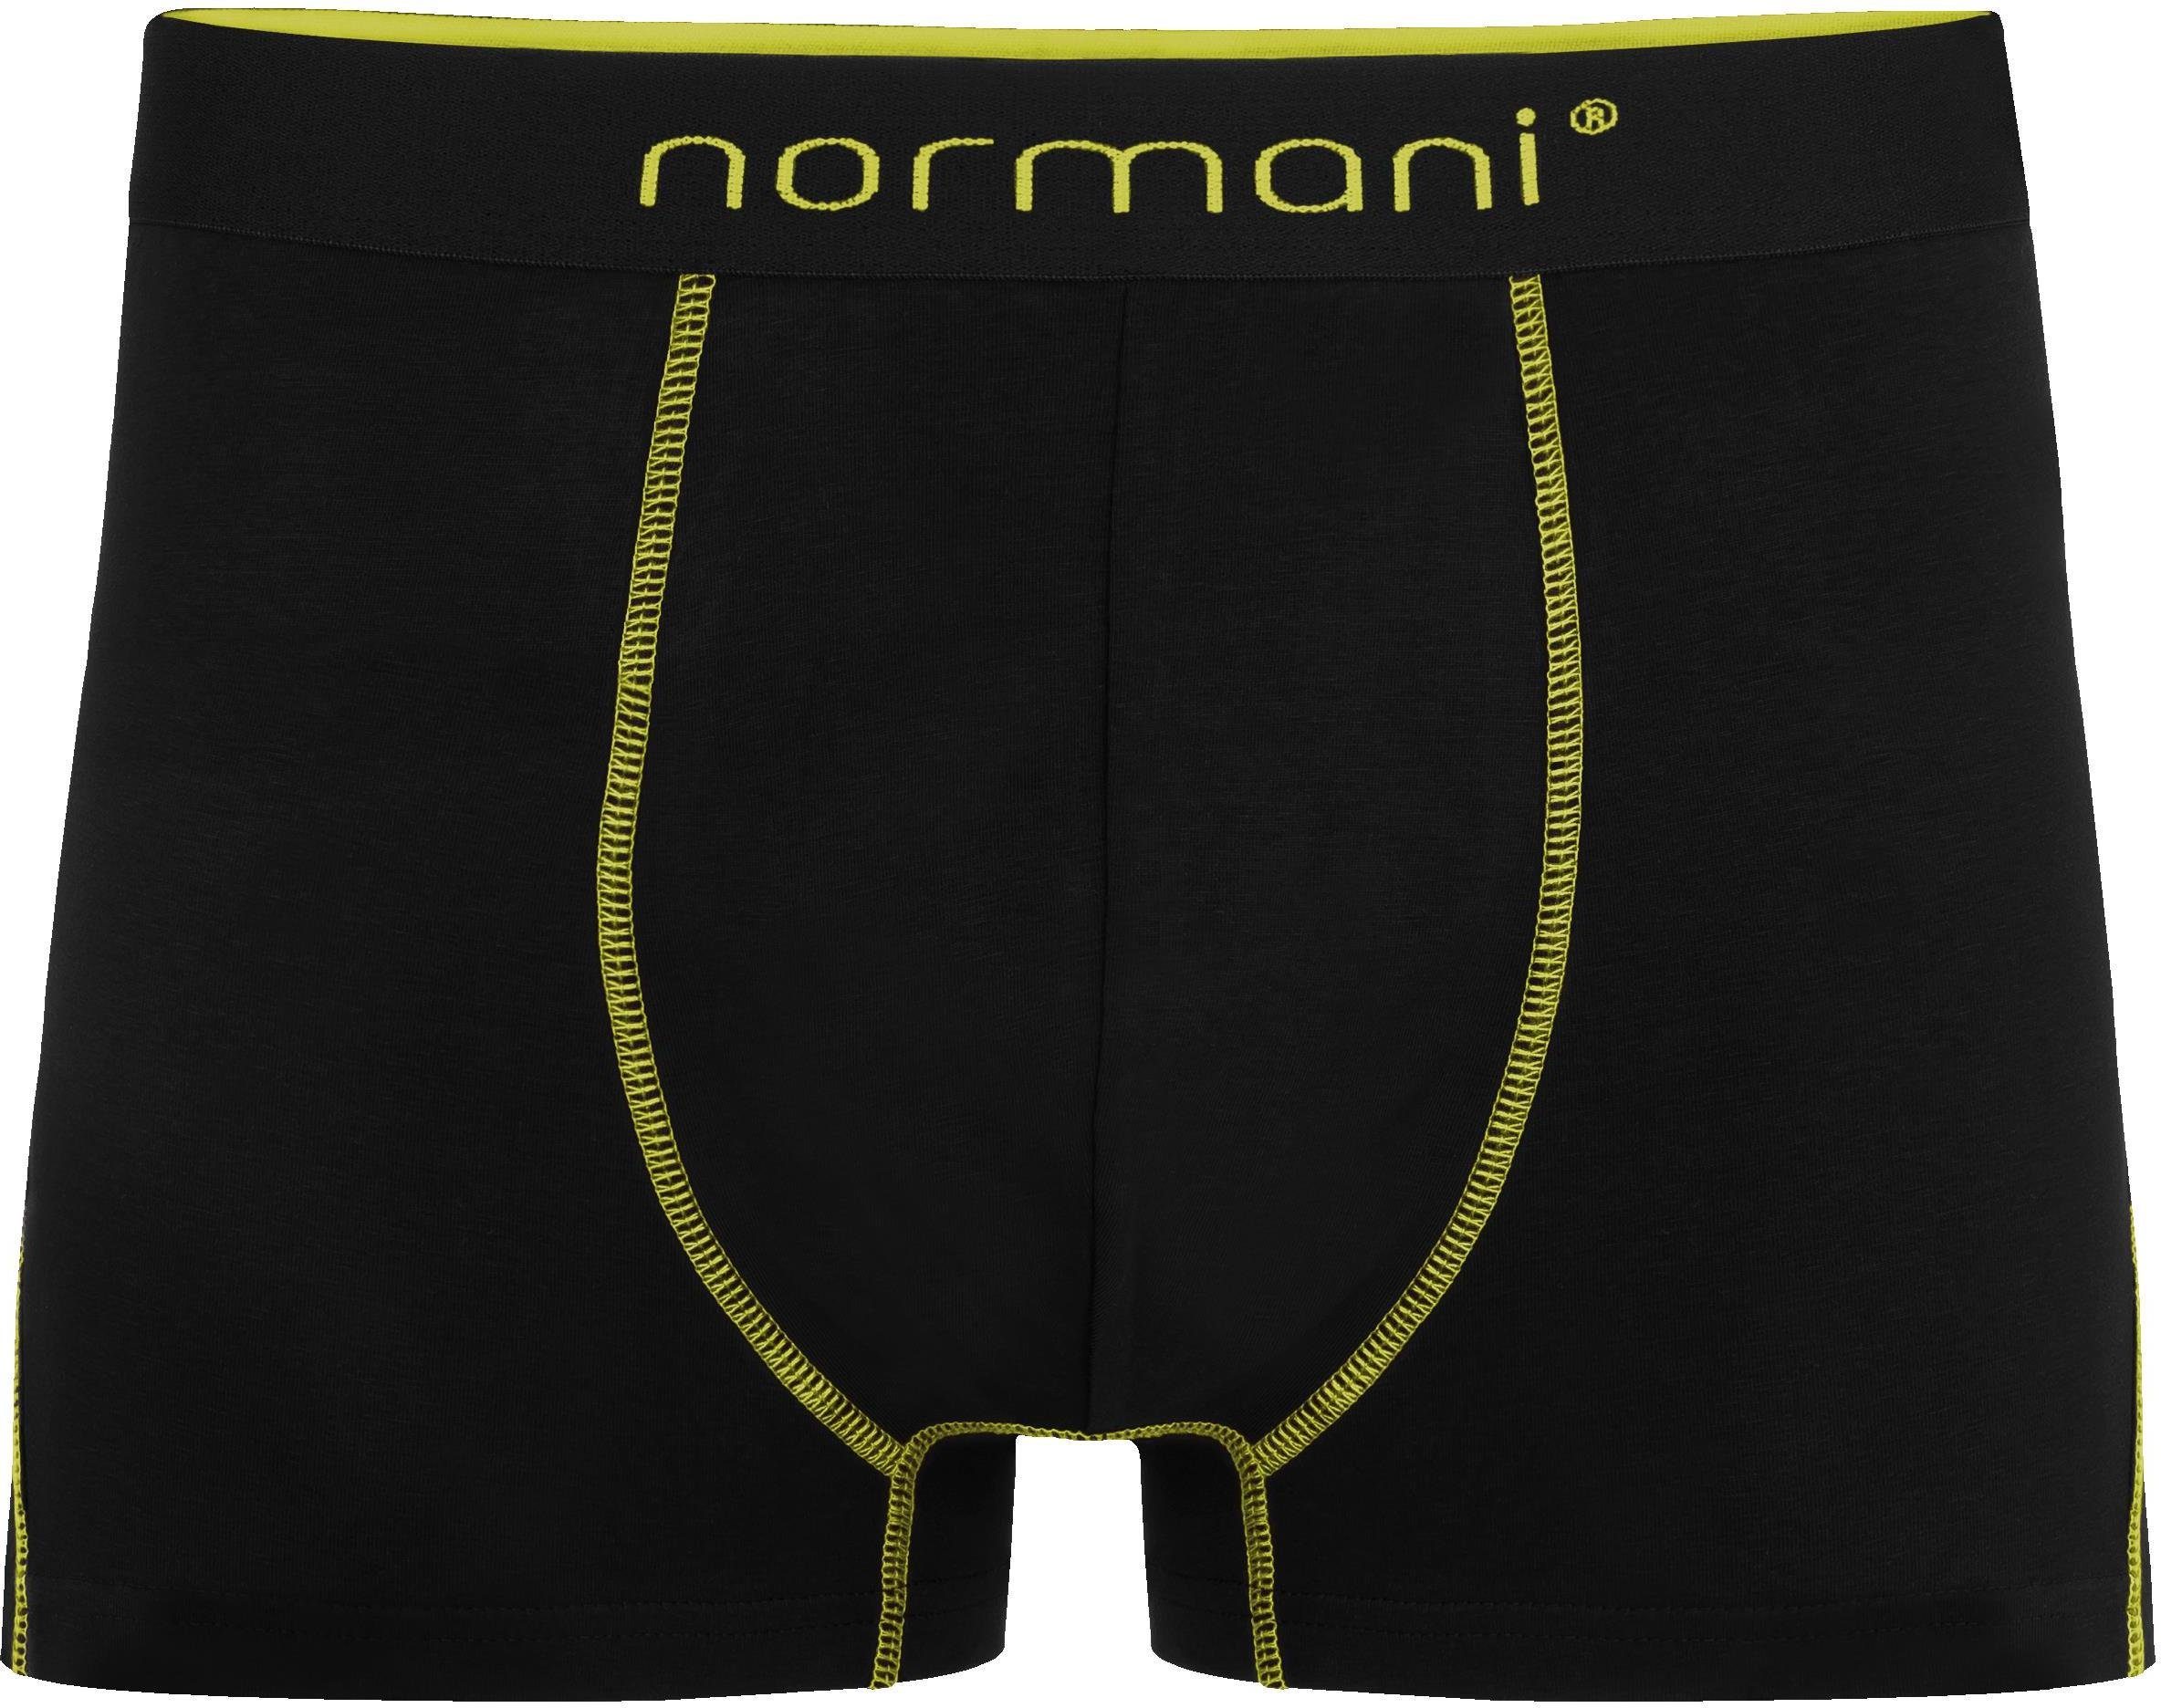 6 normani Gelb/Grün/Rot Männer Baumwolle Unterhose atmungsaktiver Herren aus Baumwoll-Boxershorts Boxershorts für